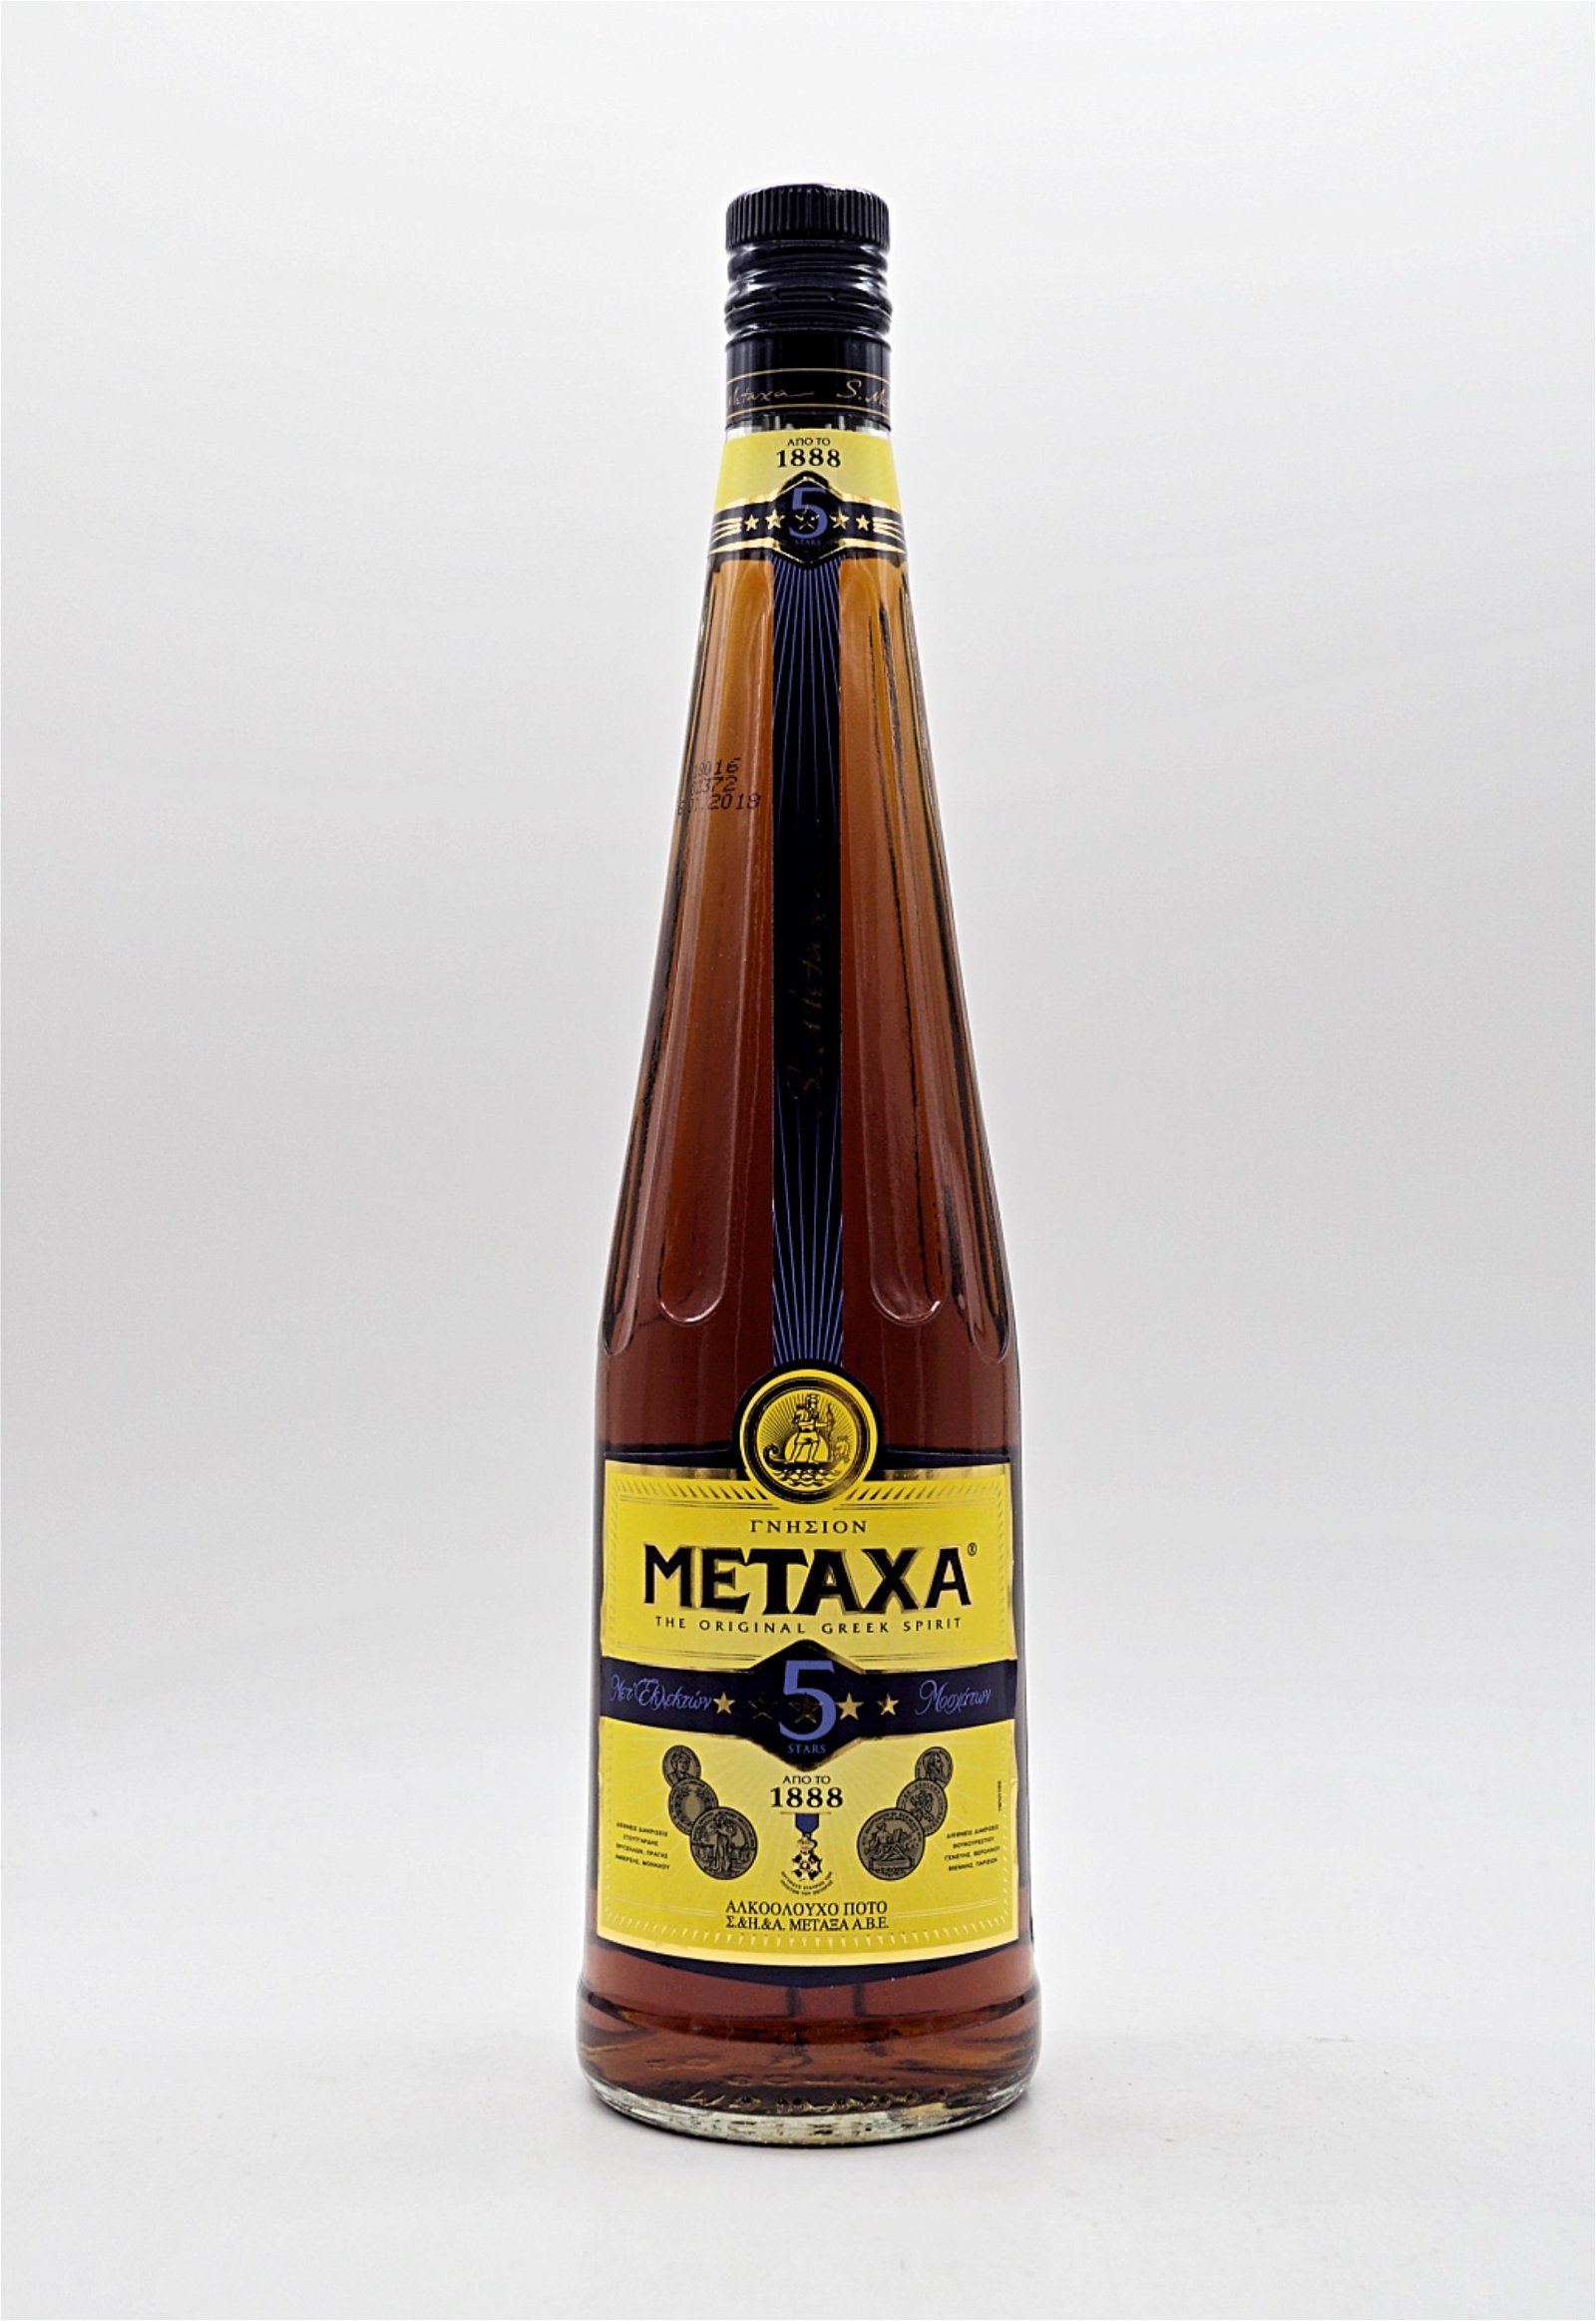 Metaxa Weinbrand 5 Stars 